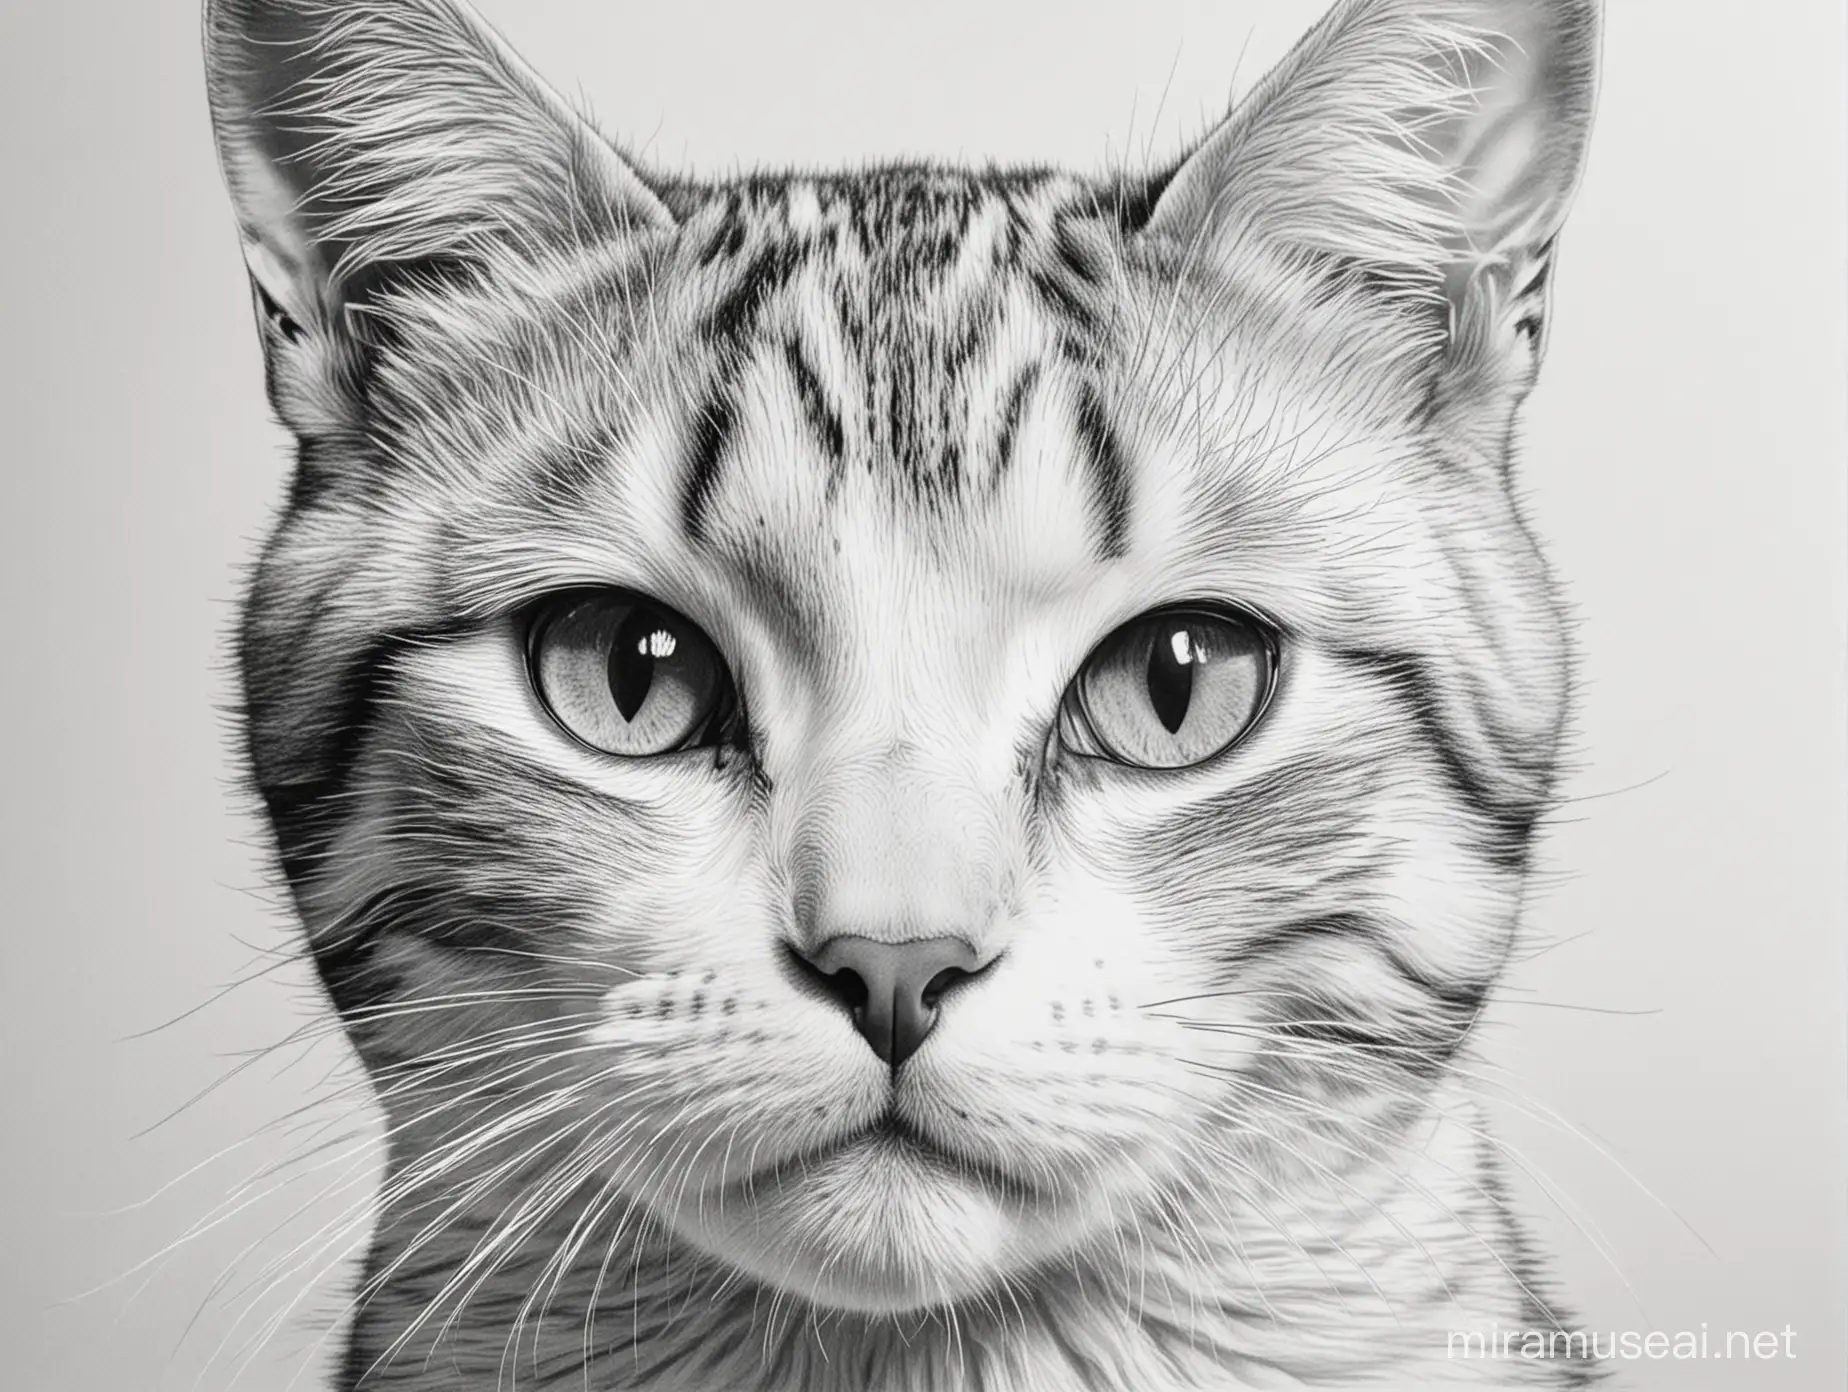 Monochrome Cat Portrait Sketch